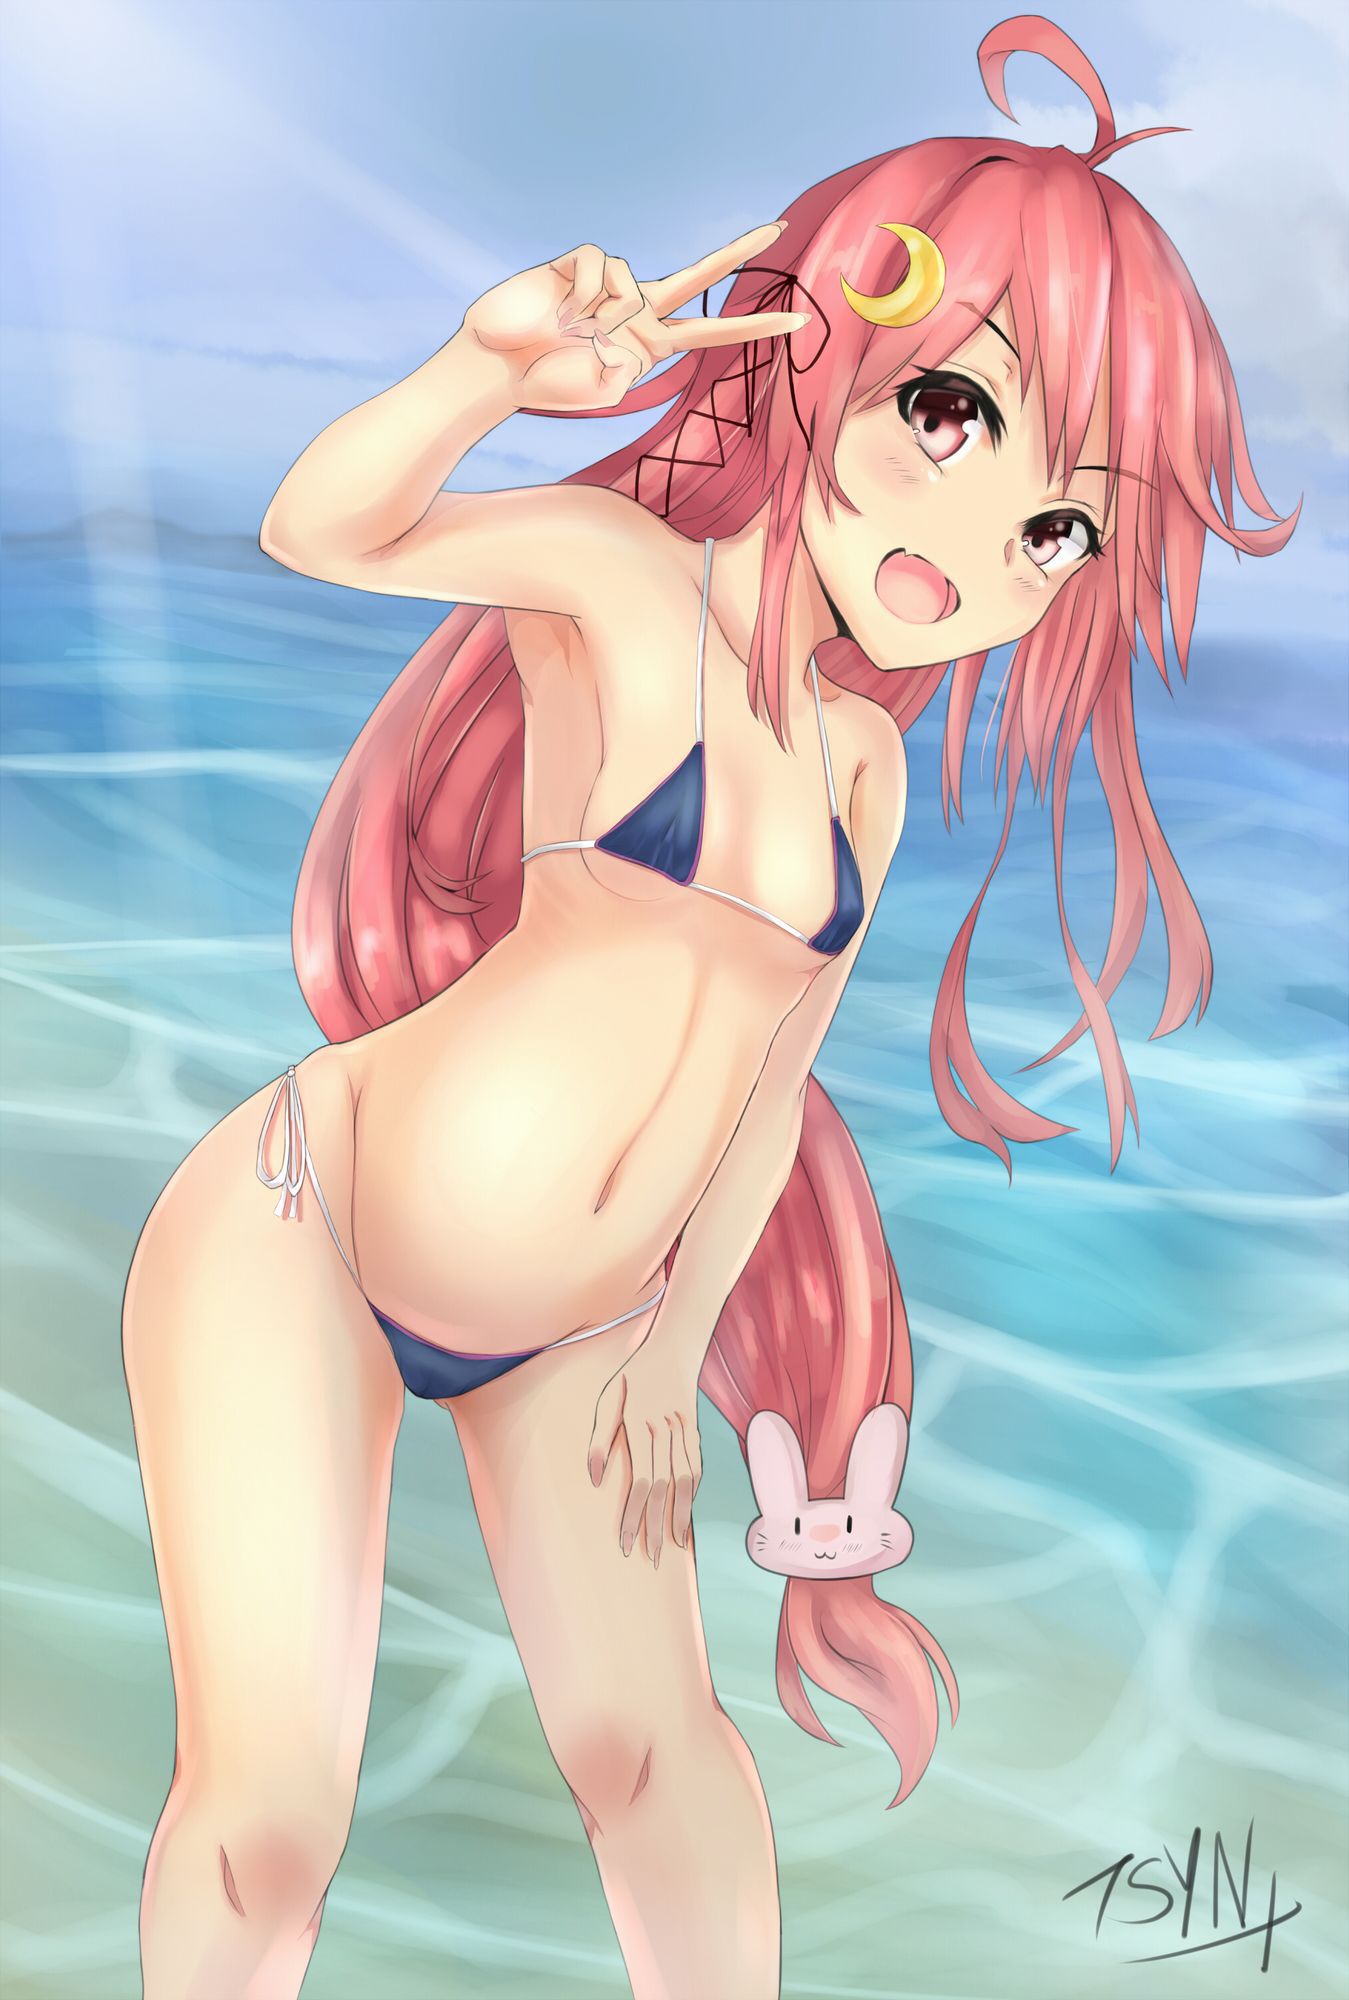 Porori Chikuni! Secondary erotic picture of a girl in a micro bikini wwww part3 34